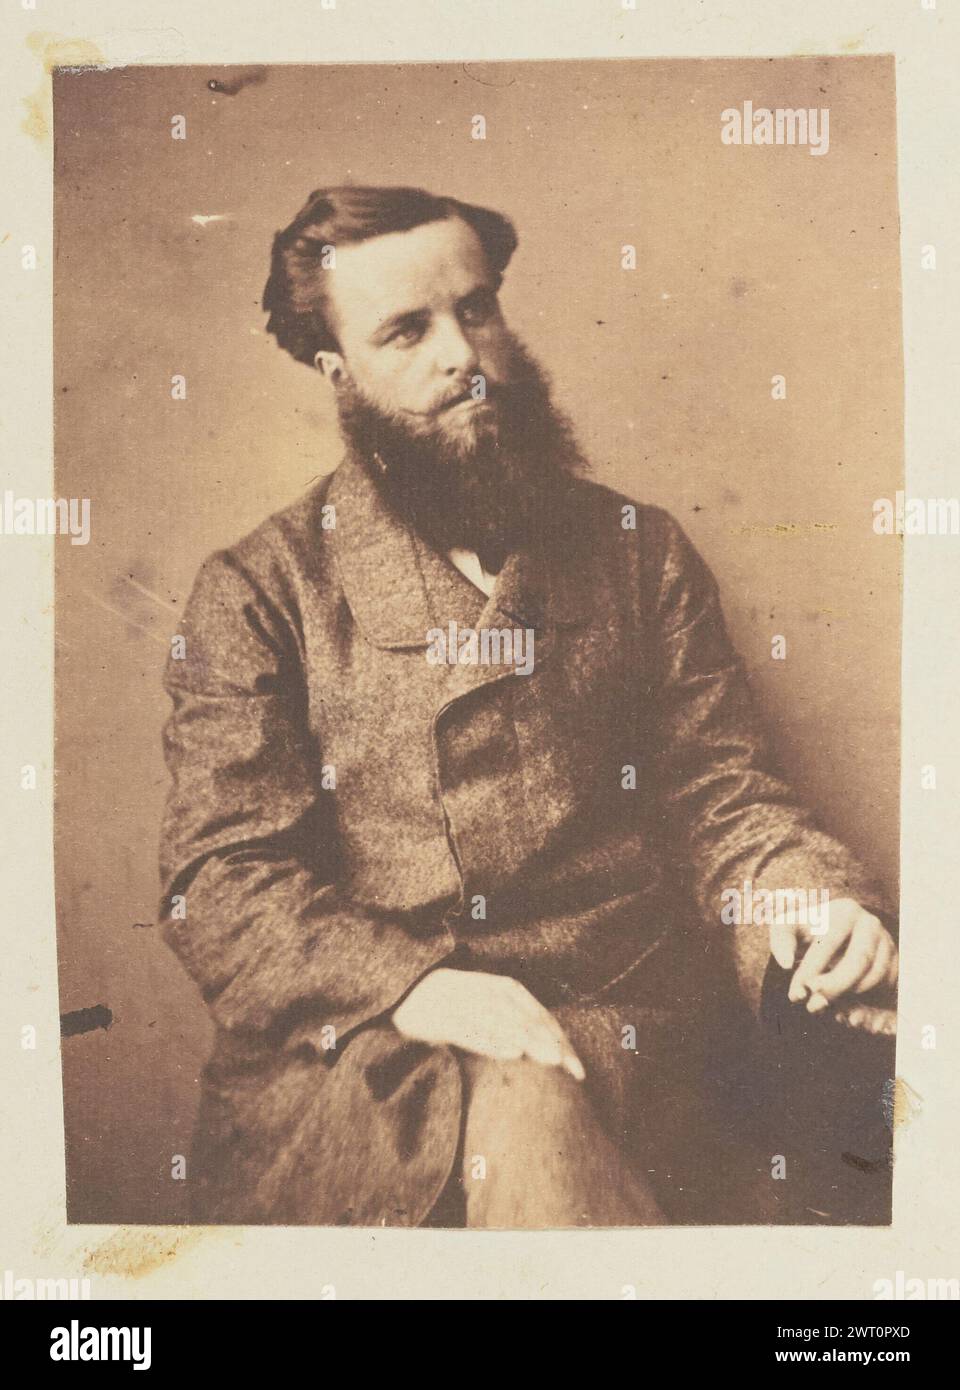 Ritratto di un uomo. Jakob Höflinger, fotografo (svizzero, 1819 - 1898) circa 1853-1860, ritratto di un uomo seduto con le mani appoggiate sulla parte superiore delle gambe. Ha la barba folta e i baffi corti. Foto Stock